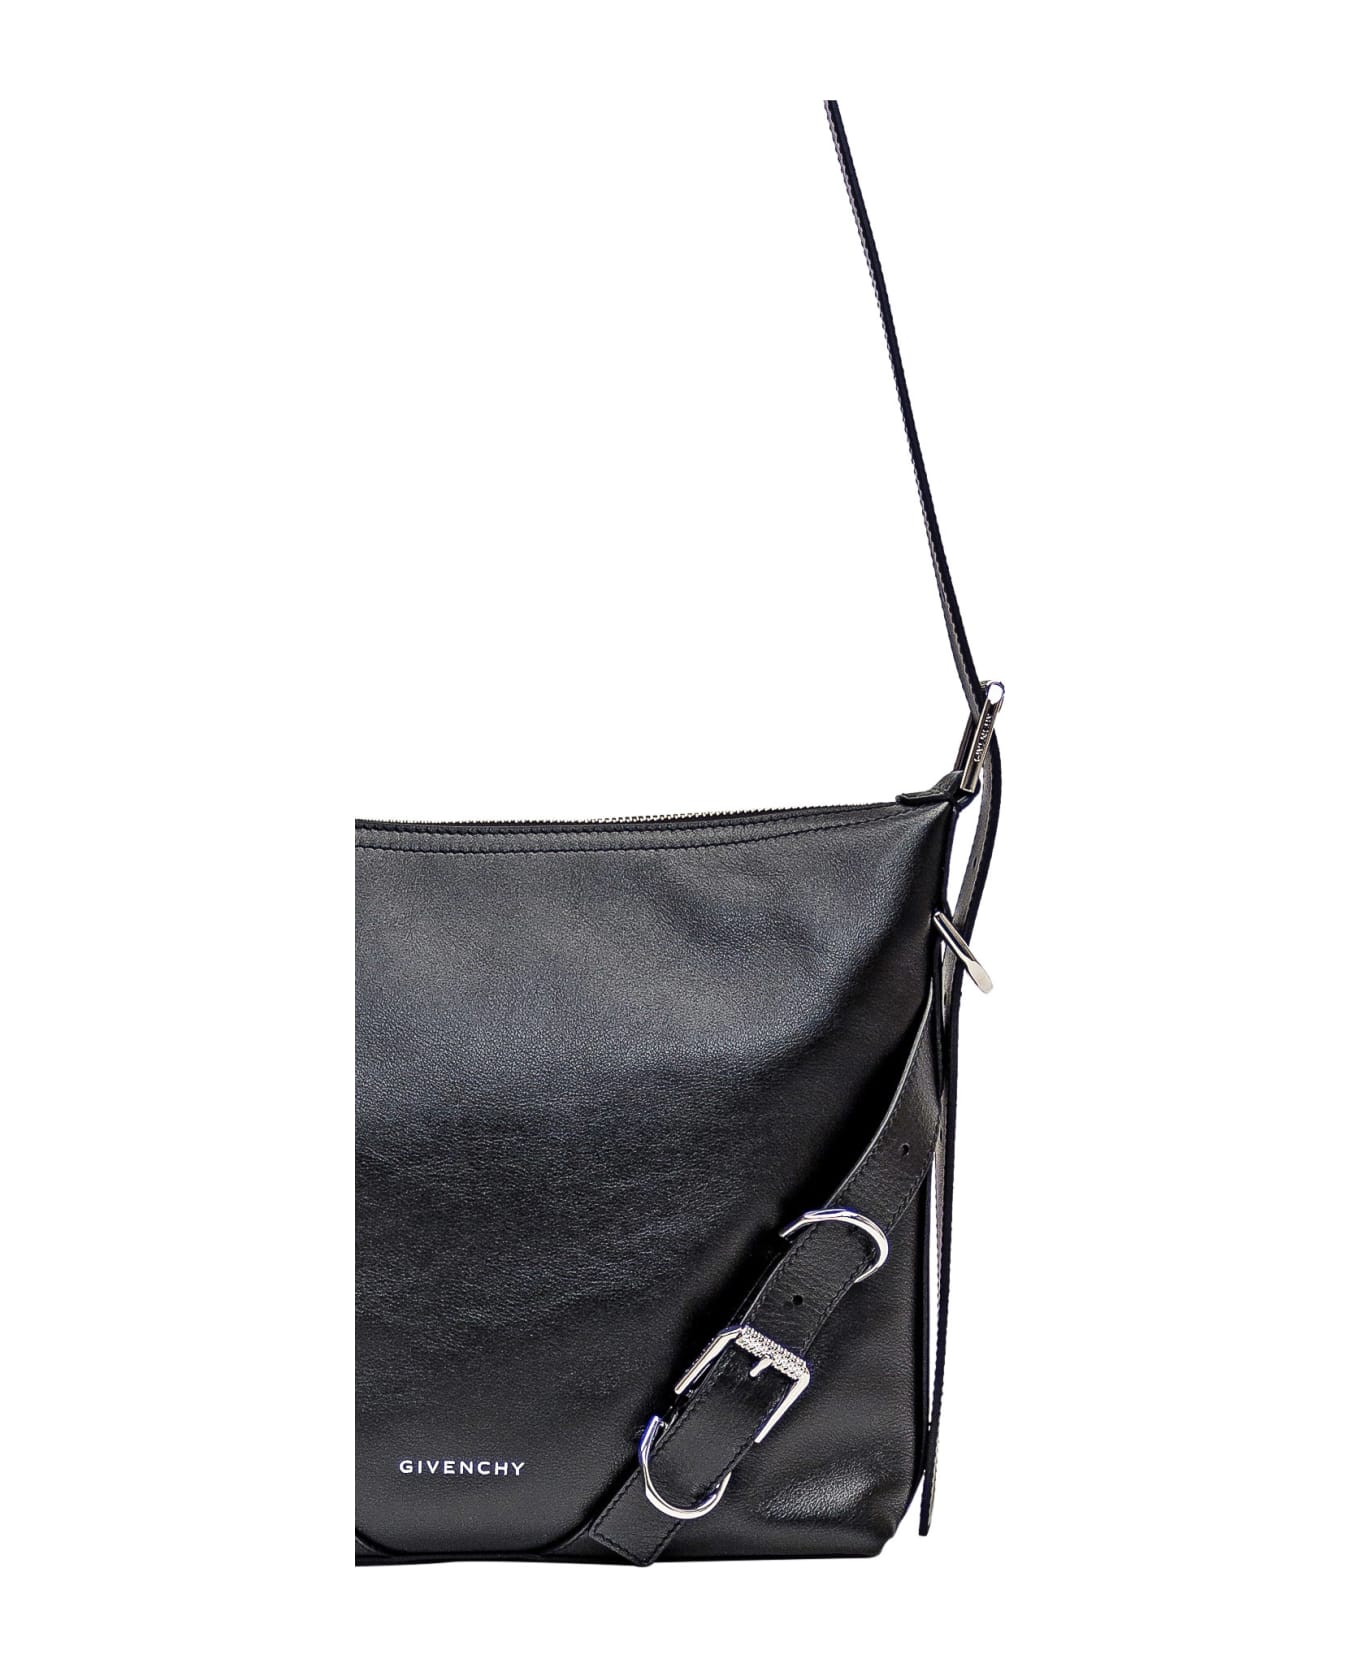 Givenchy Voyou Crossbody Bag - black ショルダーバッグ